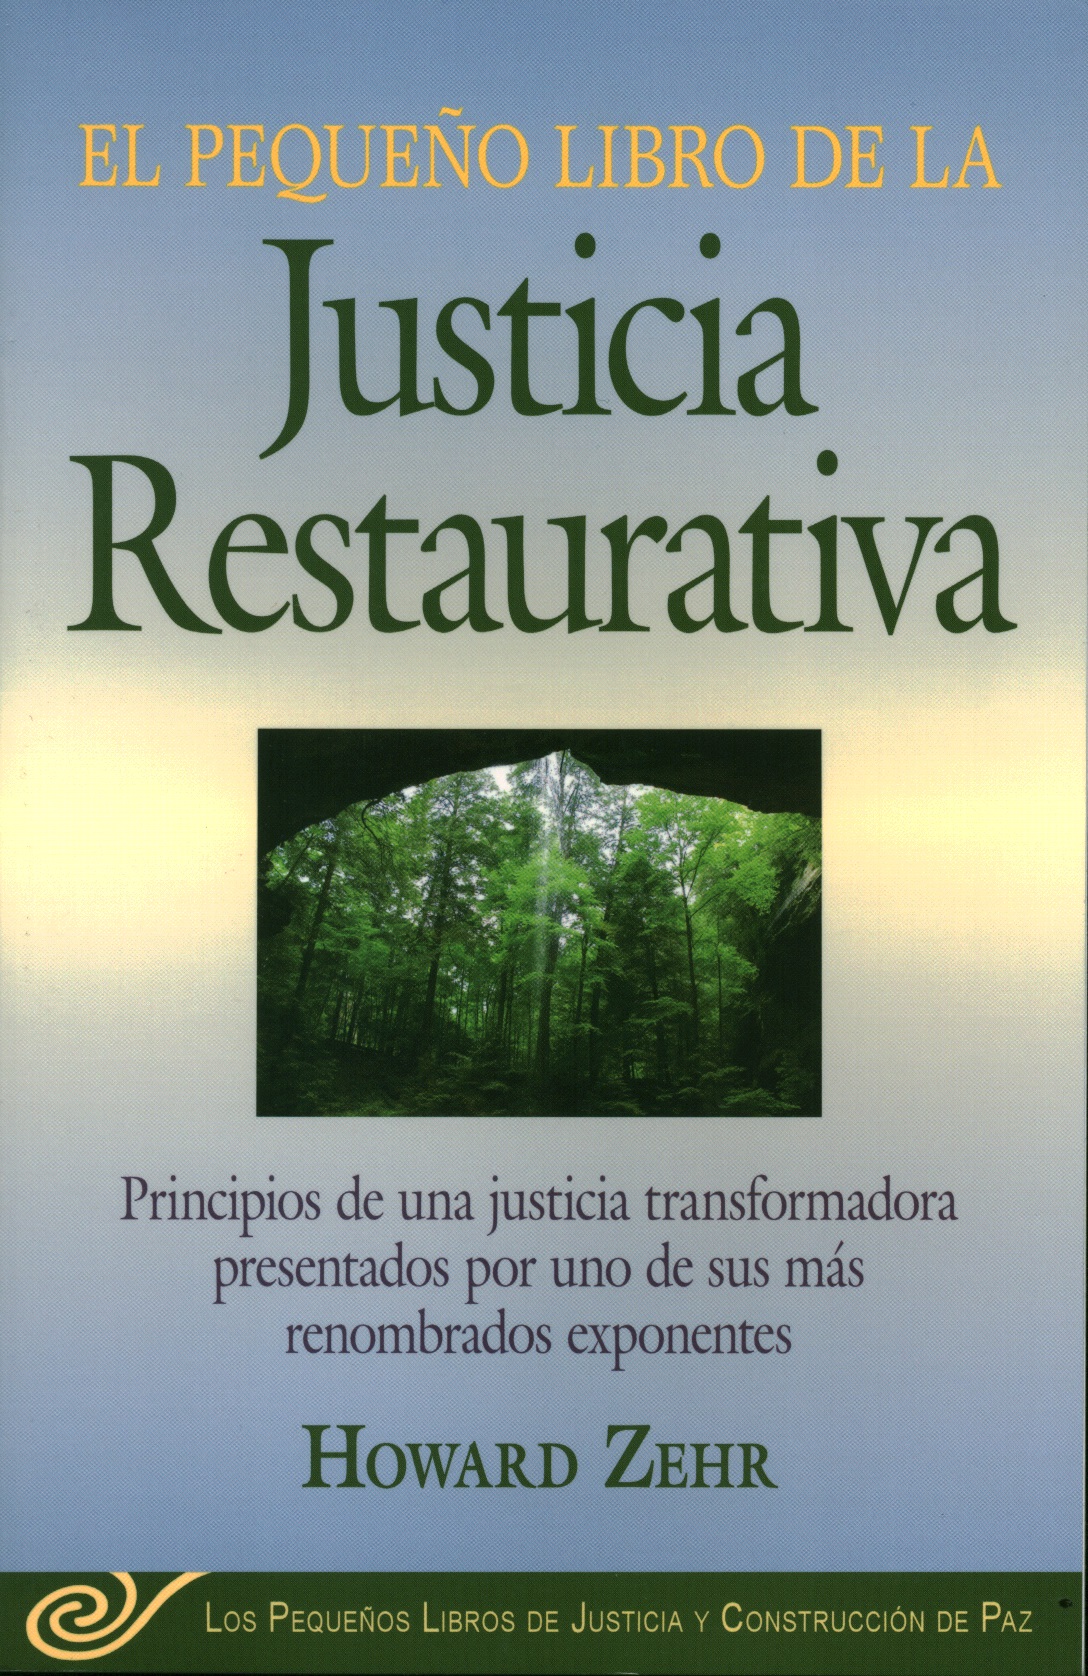 El pequeño libro de la justicia restaurativa. principios de una justicia transformadora presentados por uno de sus más renombrados exponentes